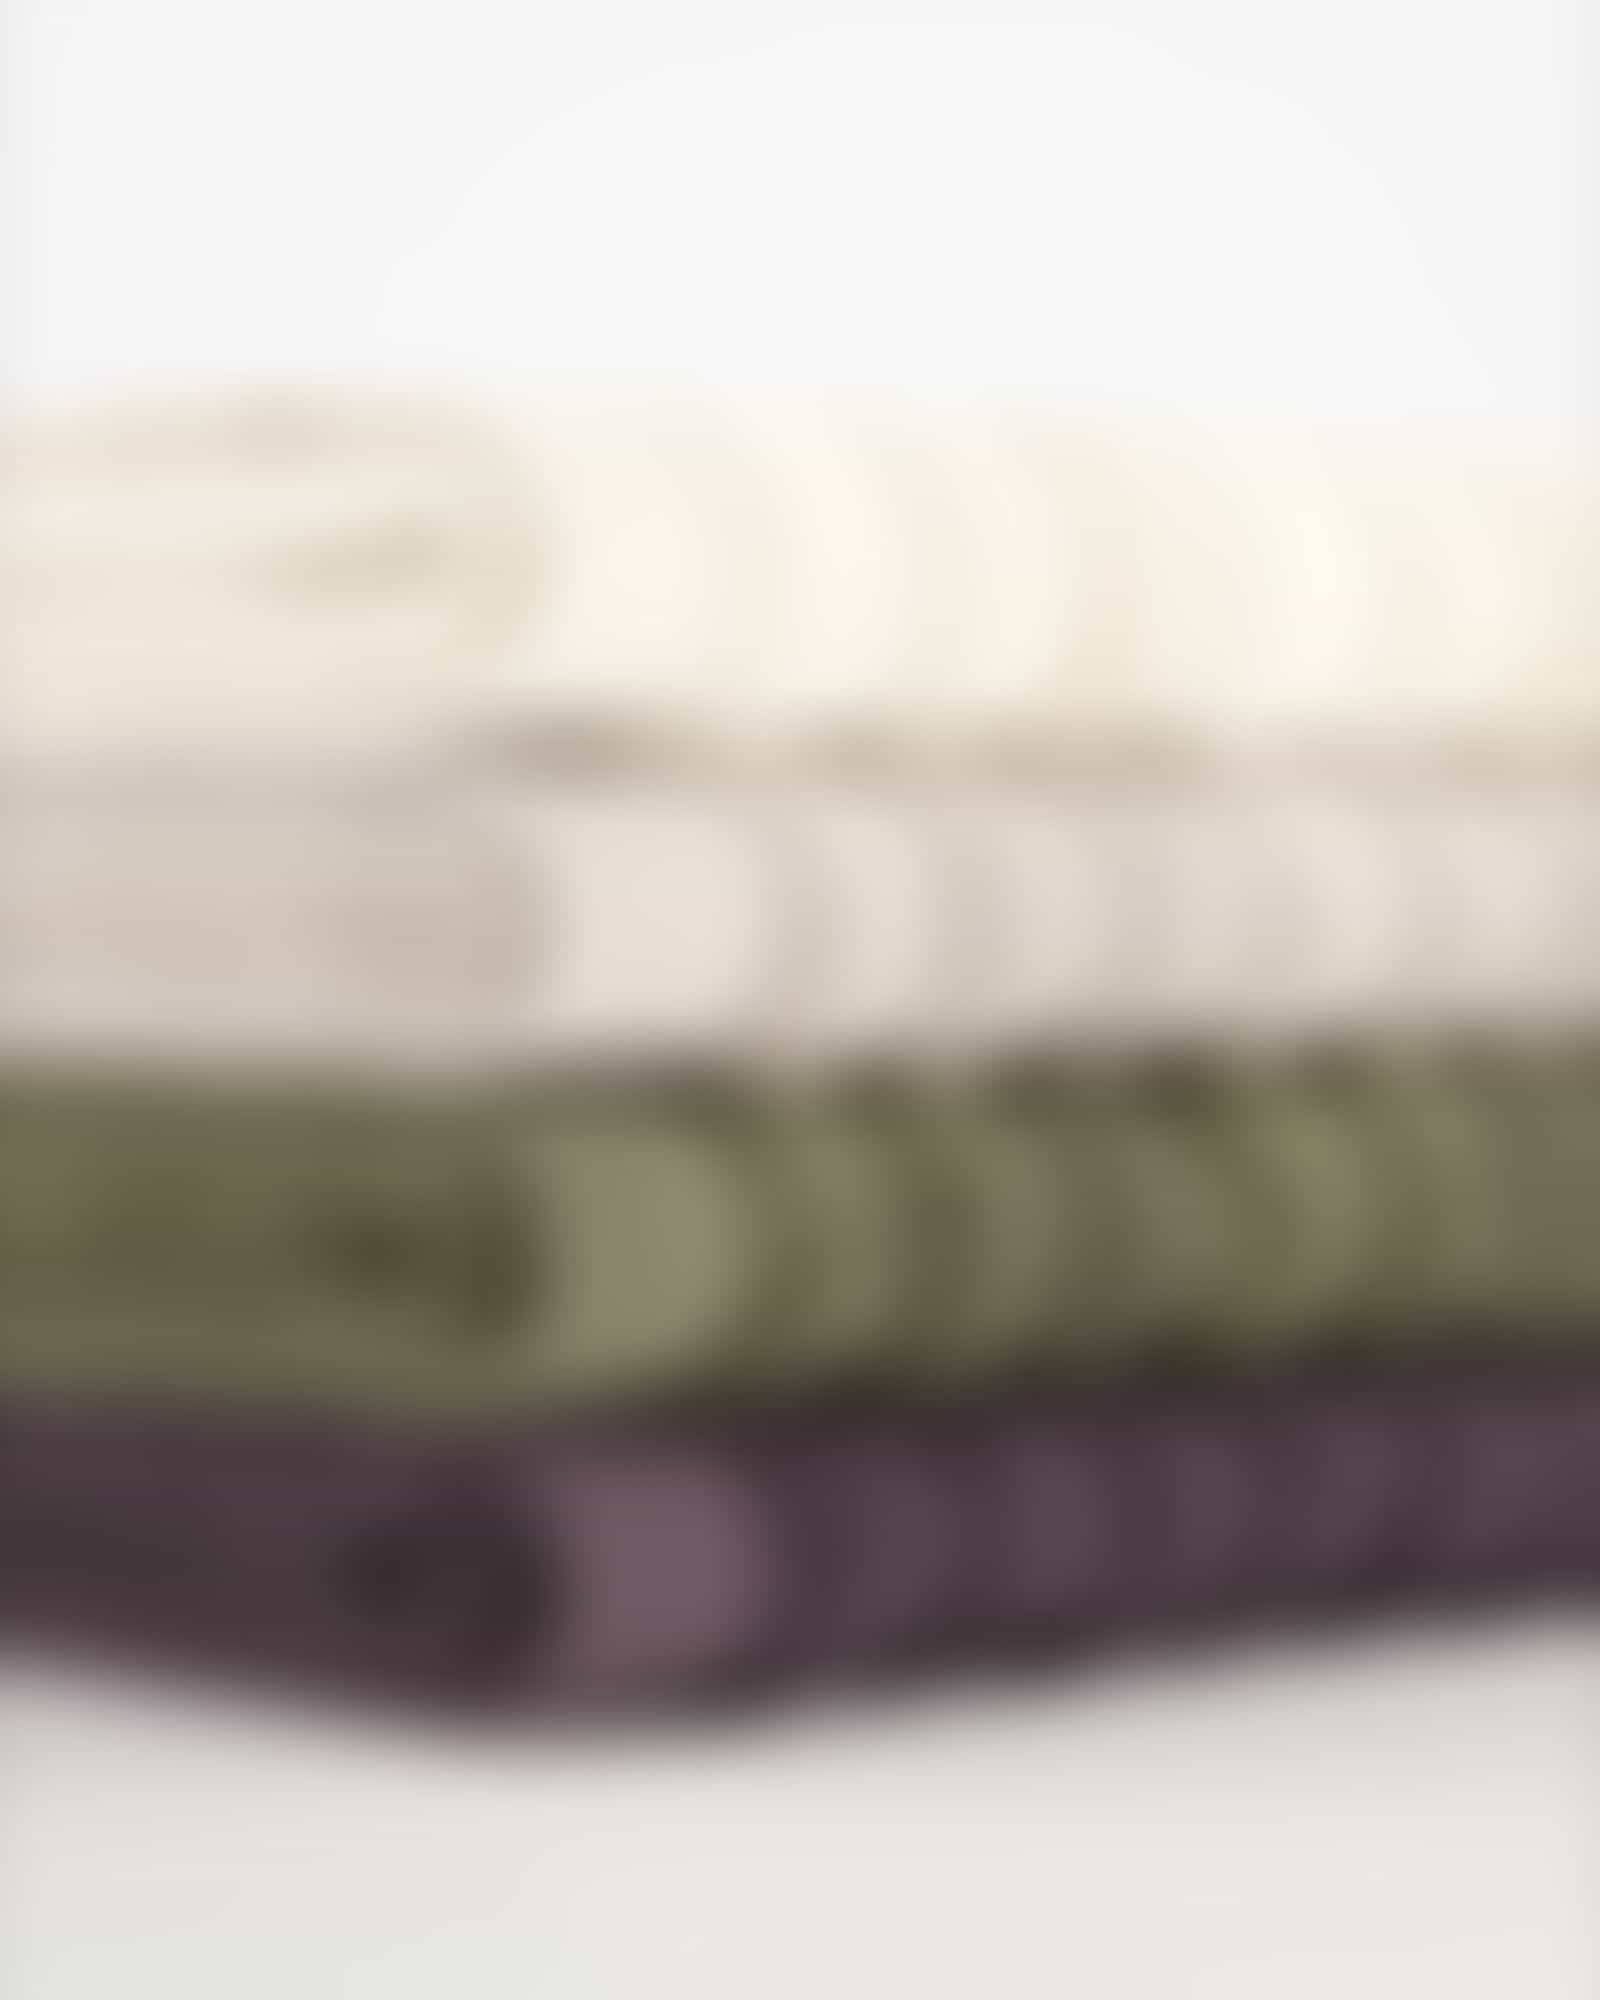 Möve Handtücher Wellbeing Wellenstruktur - Farbe: cashmere - 713 - Handtuch 50x100 cm